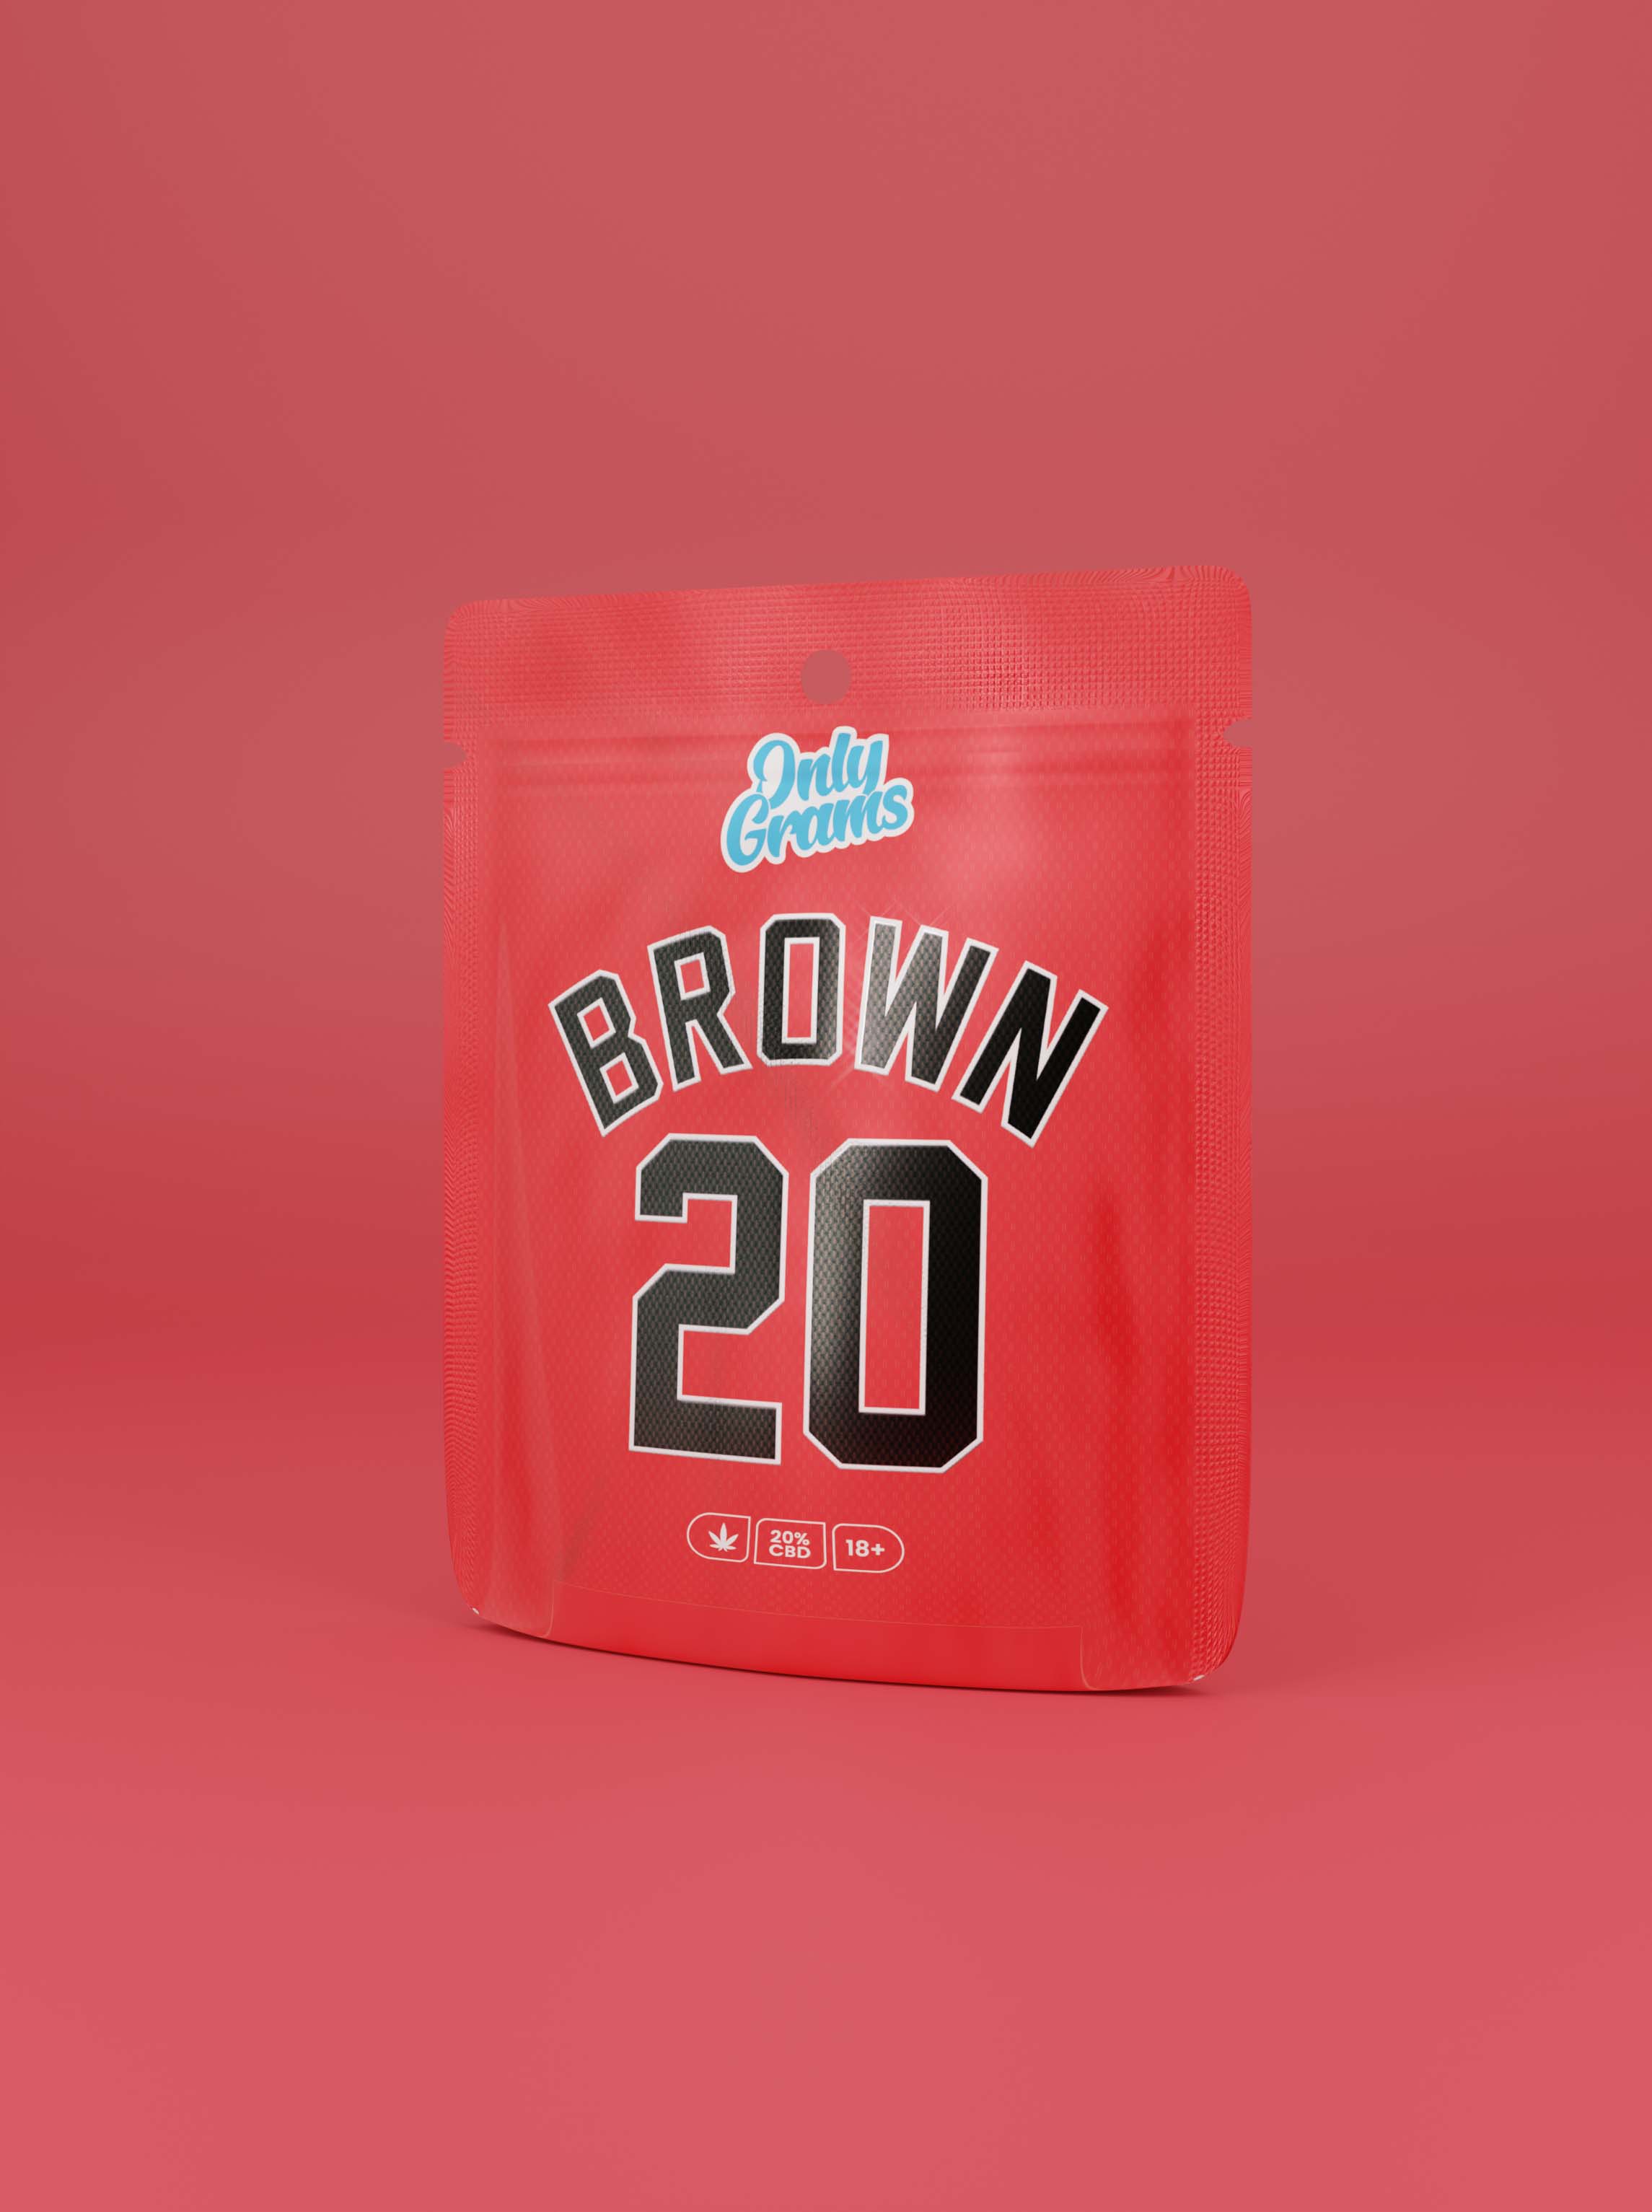 Brown20 | CBD hash